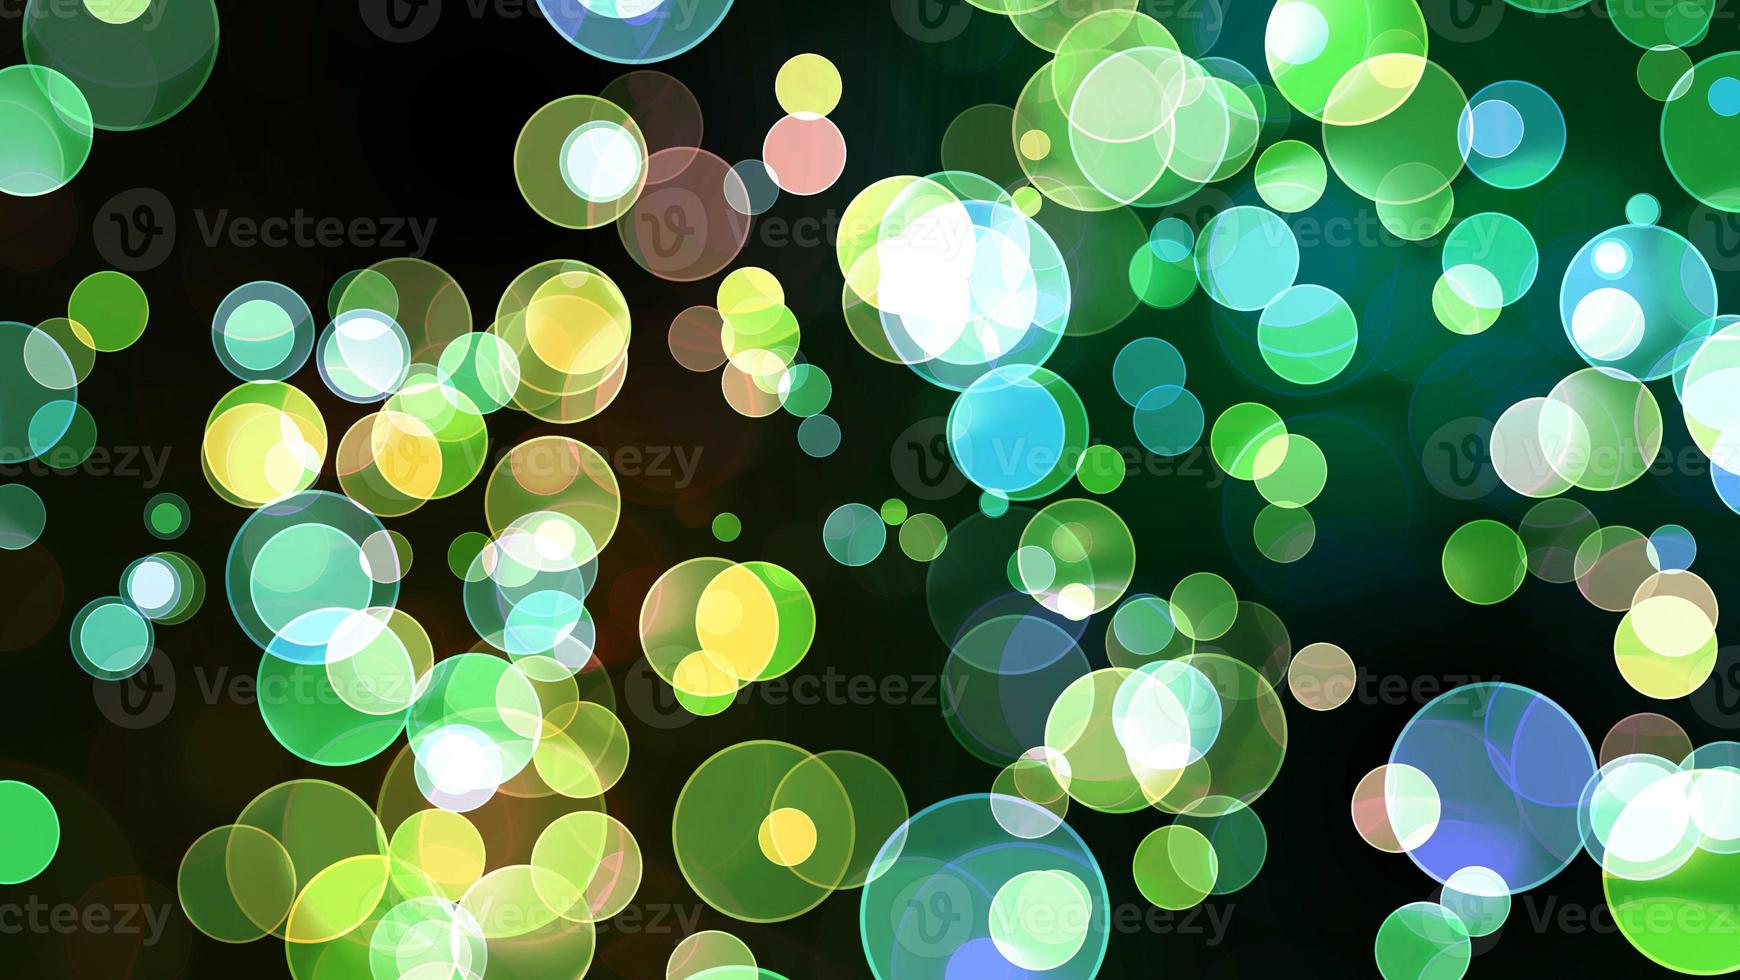 kleurrijke blauwgroene lichtbellen foto